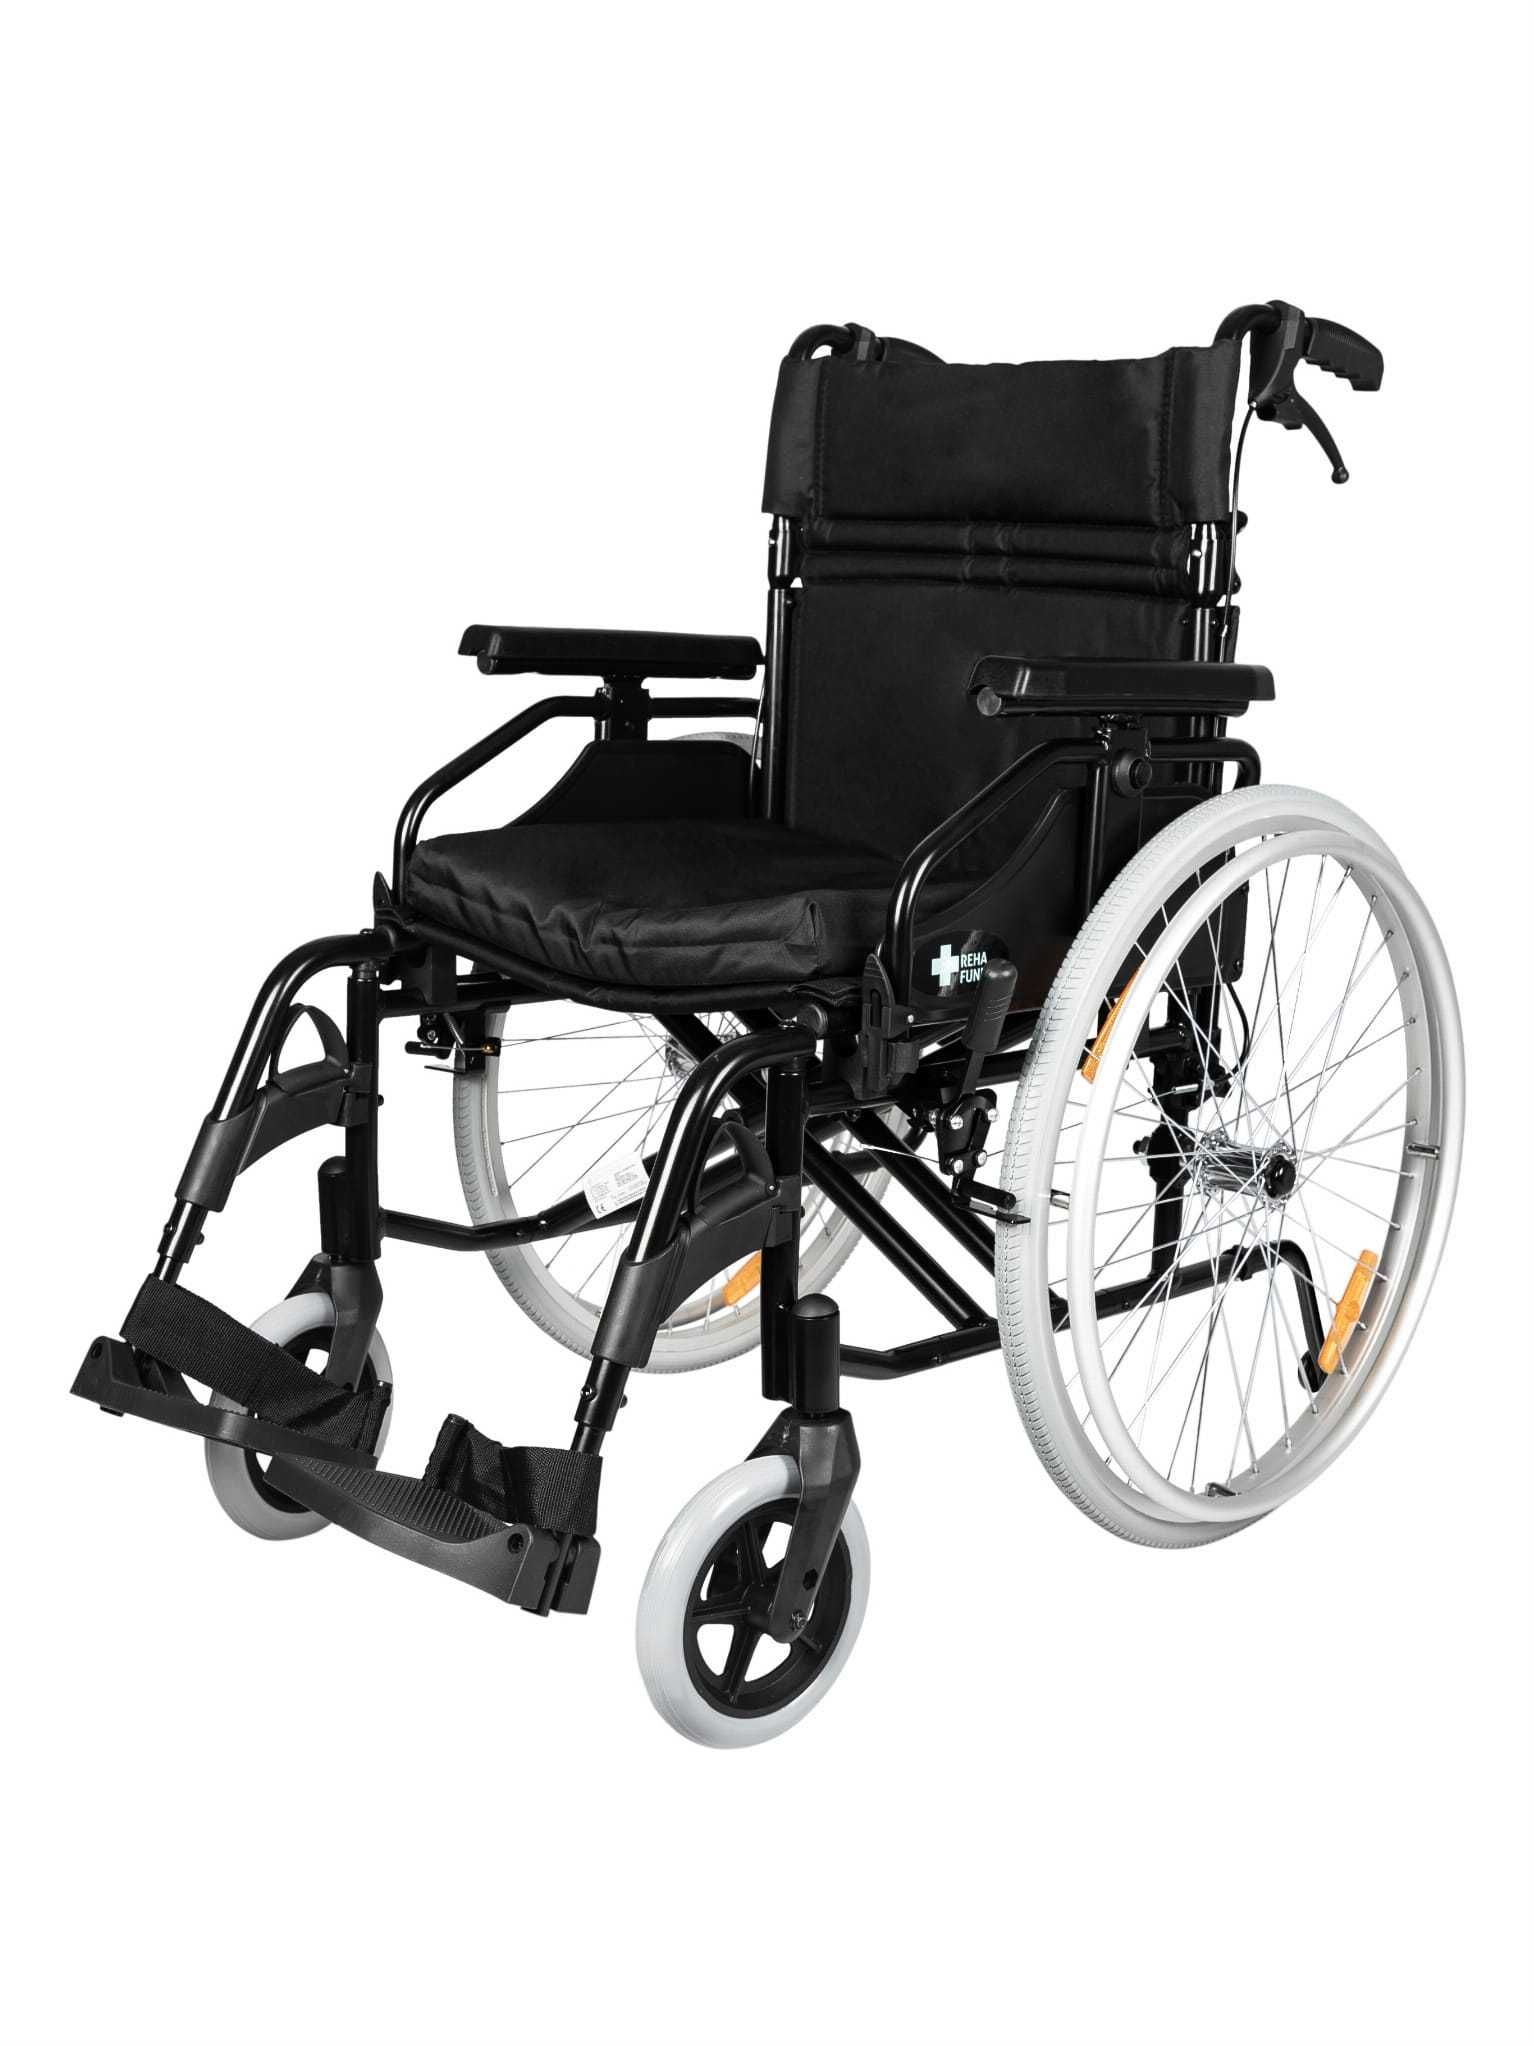 NOWY Wózek inwalidzki aluminiowy 100% refundowany !!